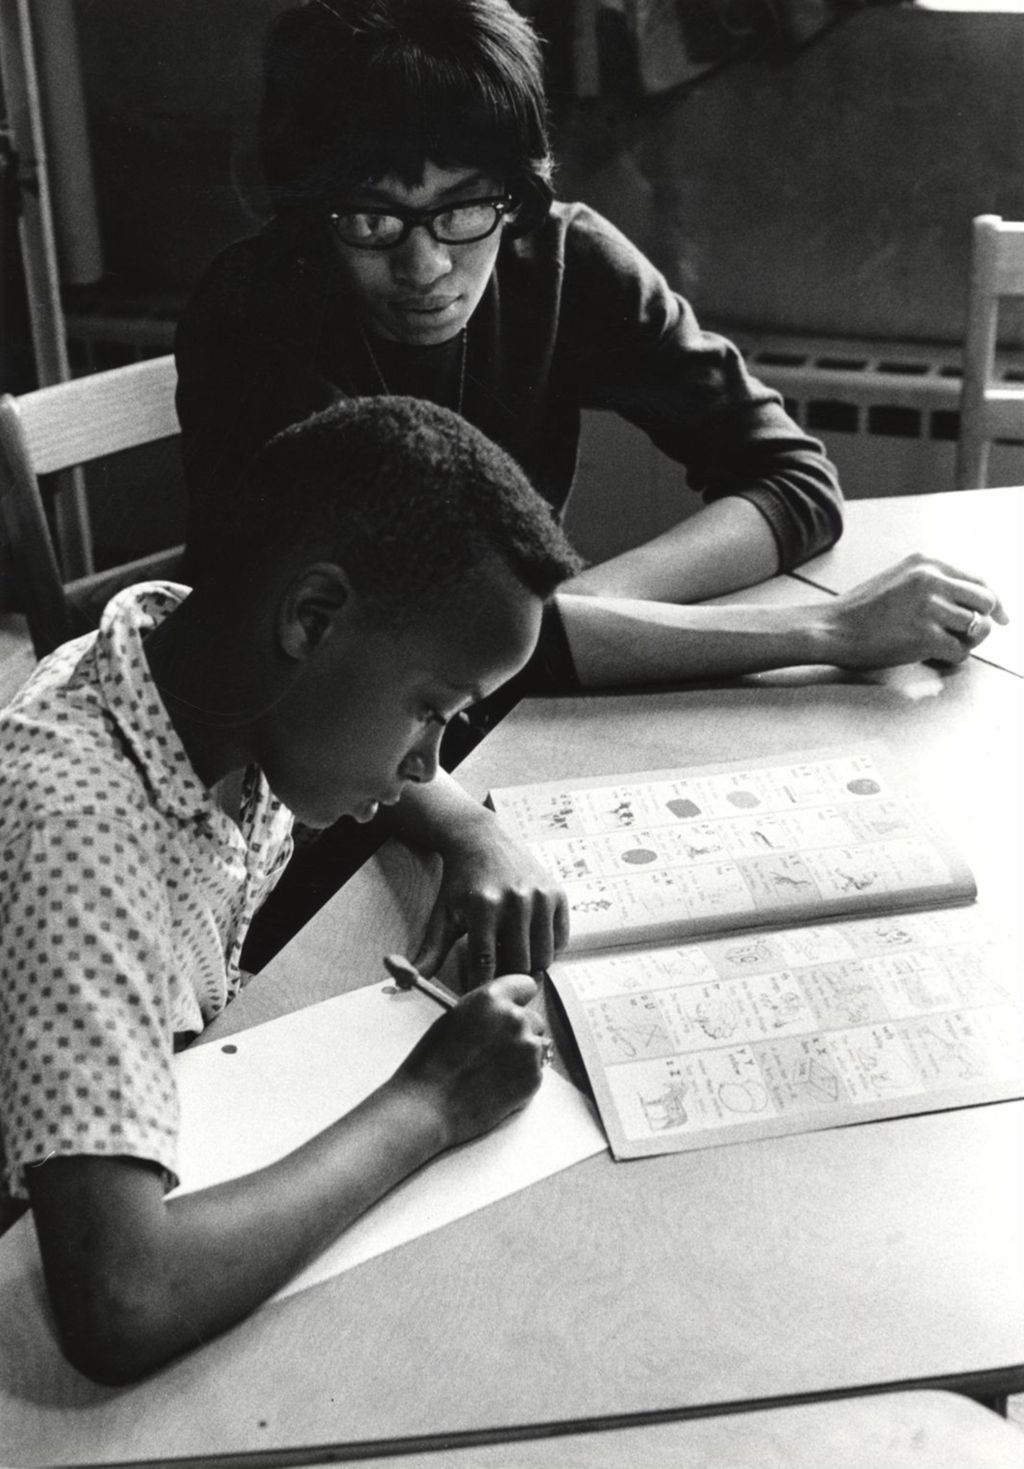 Woman tutoring a boy